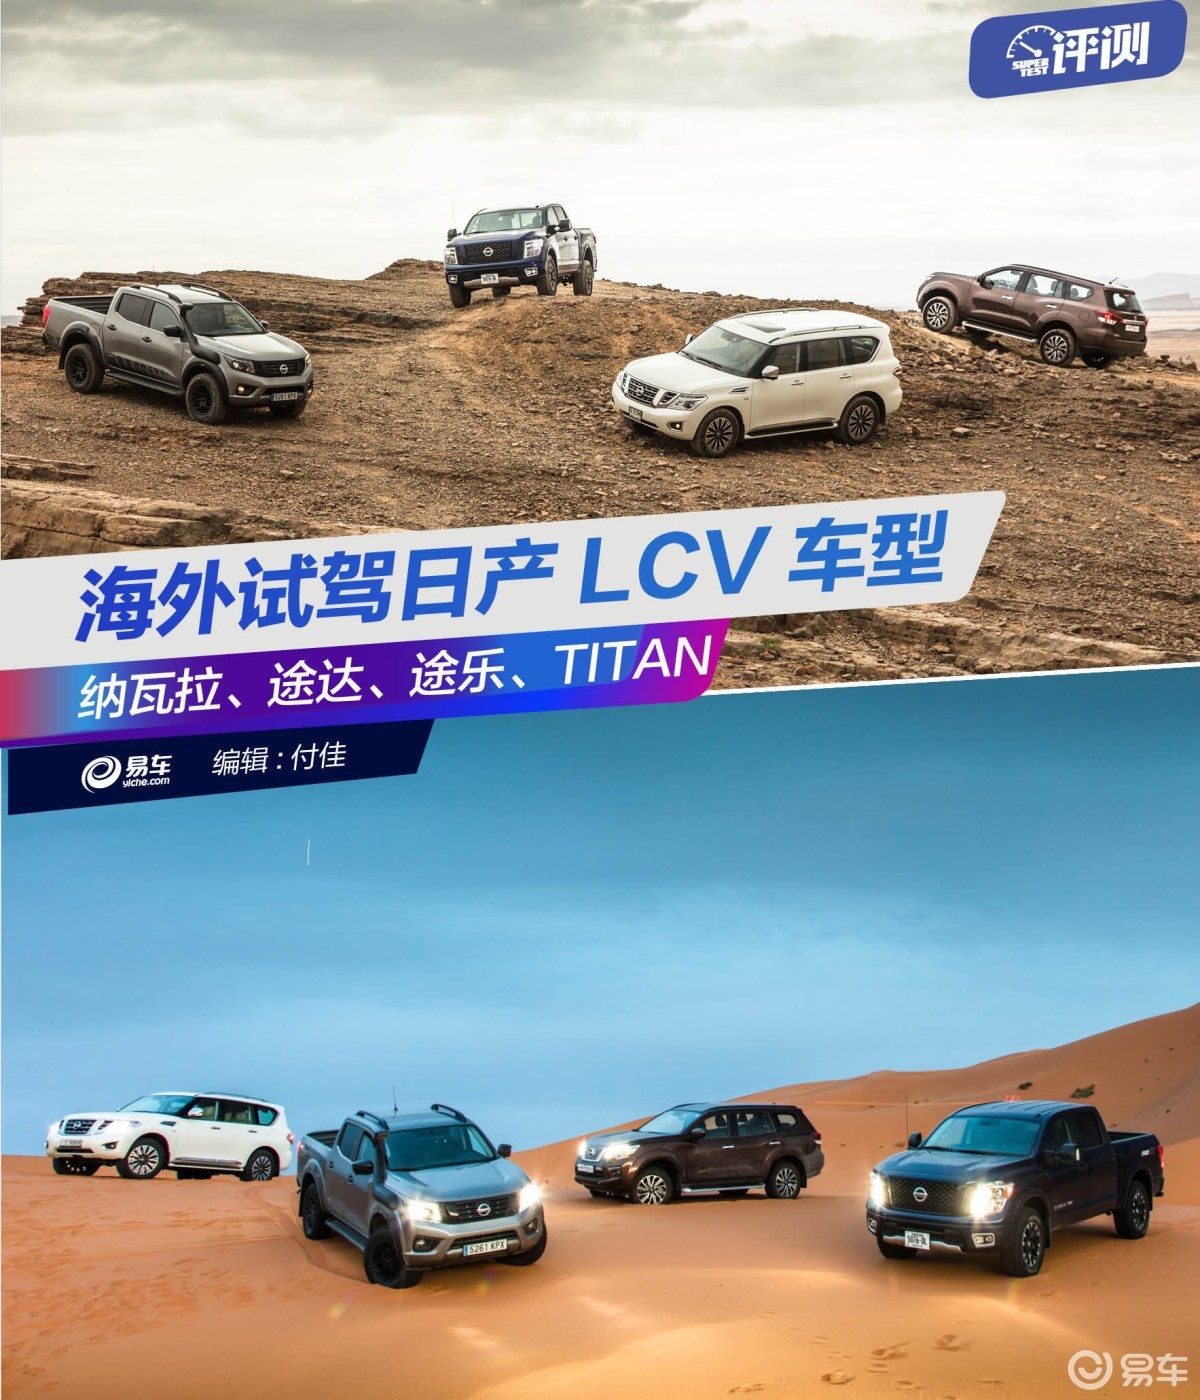 海外试驾日产LCV车型 纳瓦拉、途达、途乐、TITAN沙漠体验